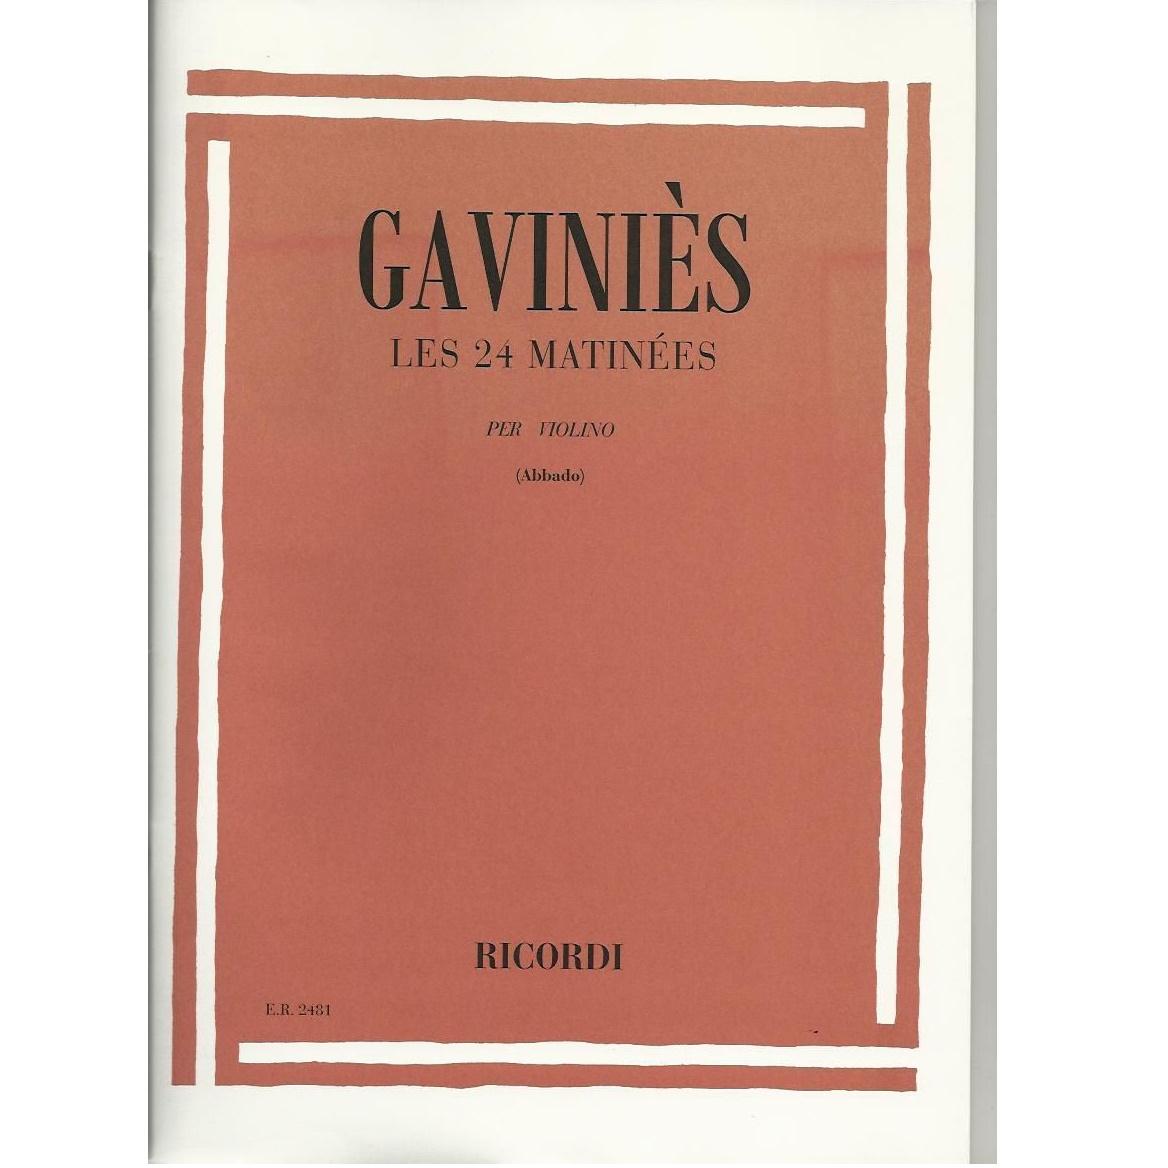 Gavinies Les 24 Matinees Per Violino (Abbado) - Ricordi